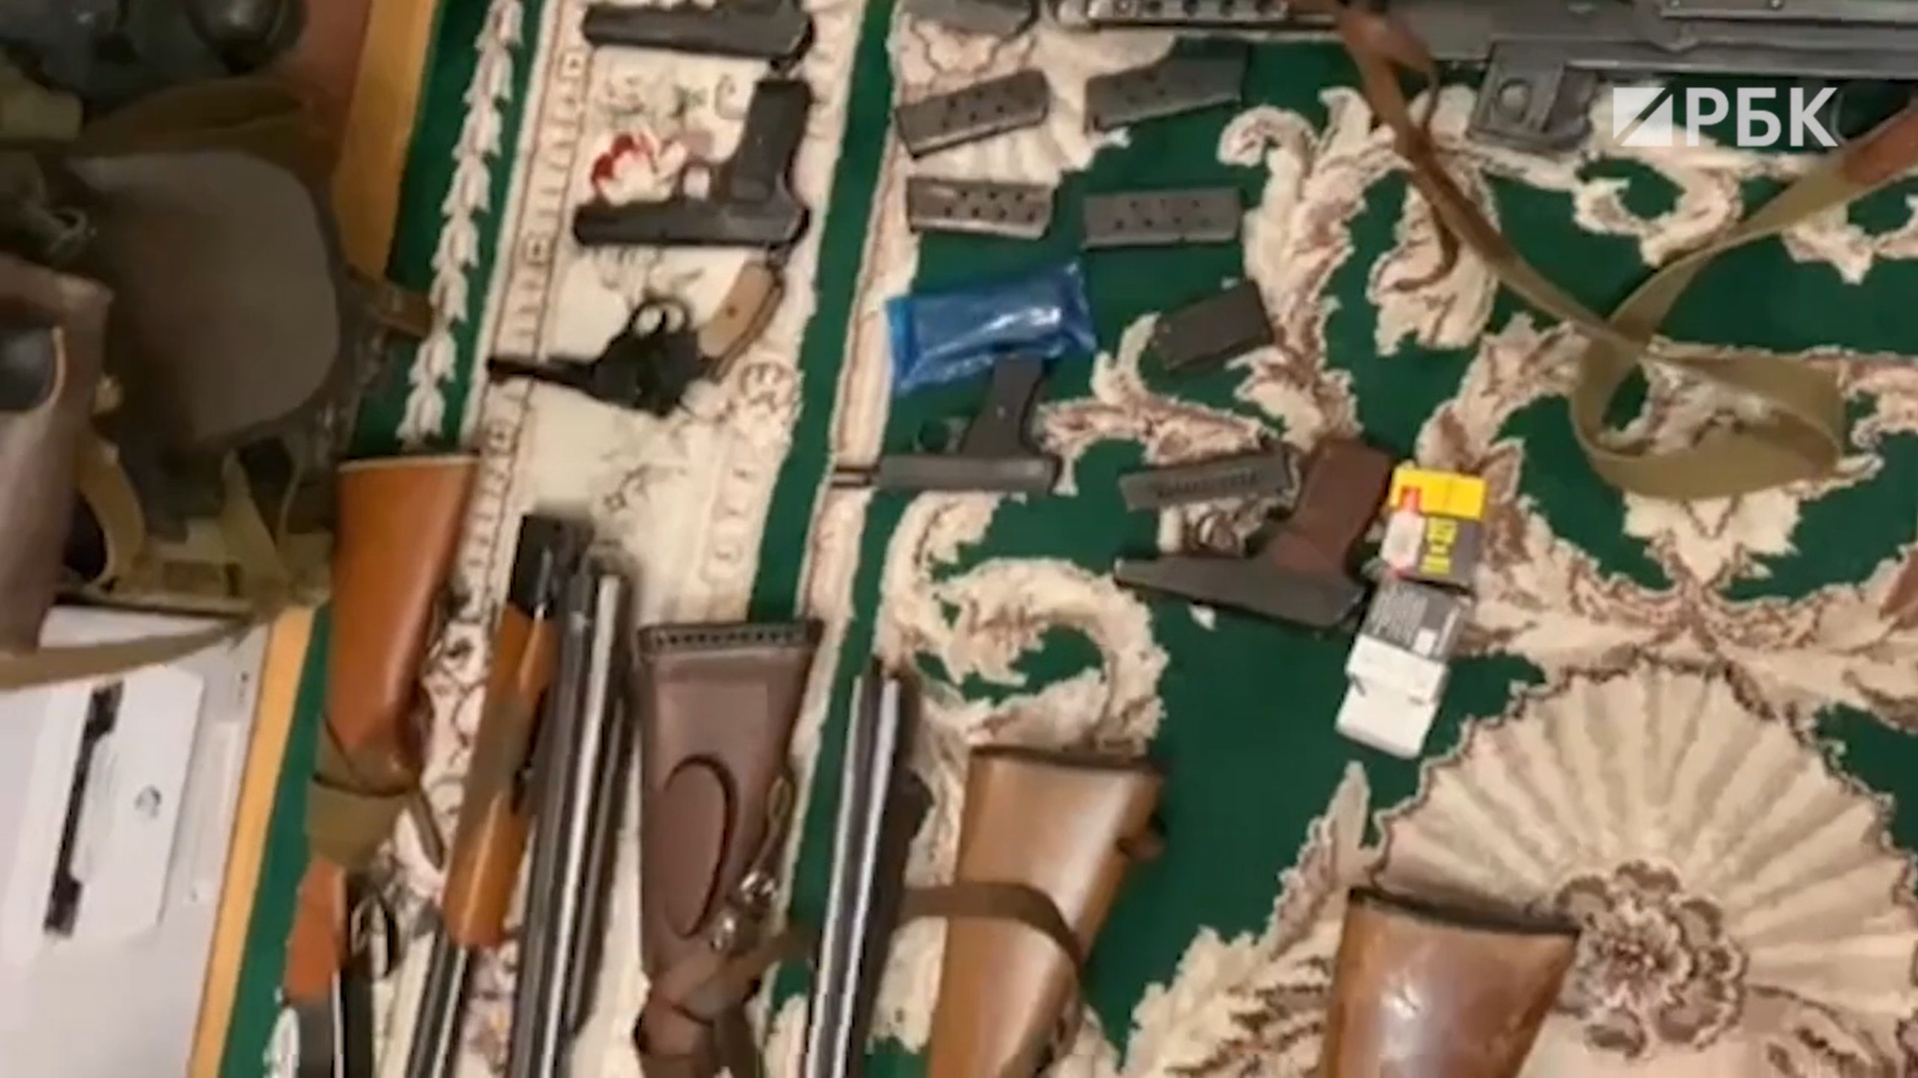 ФСБ изъяла у «подпольных оружейников» пистолеты и пулеметы в 33 регионах